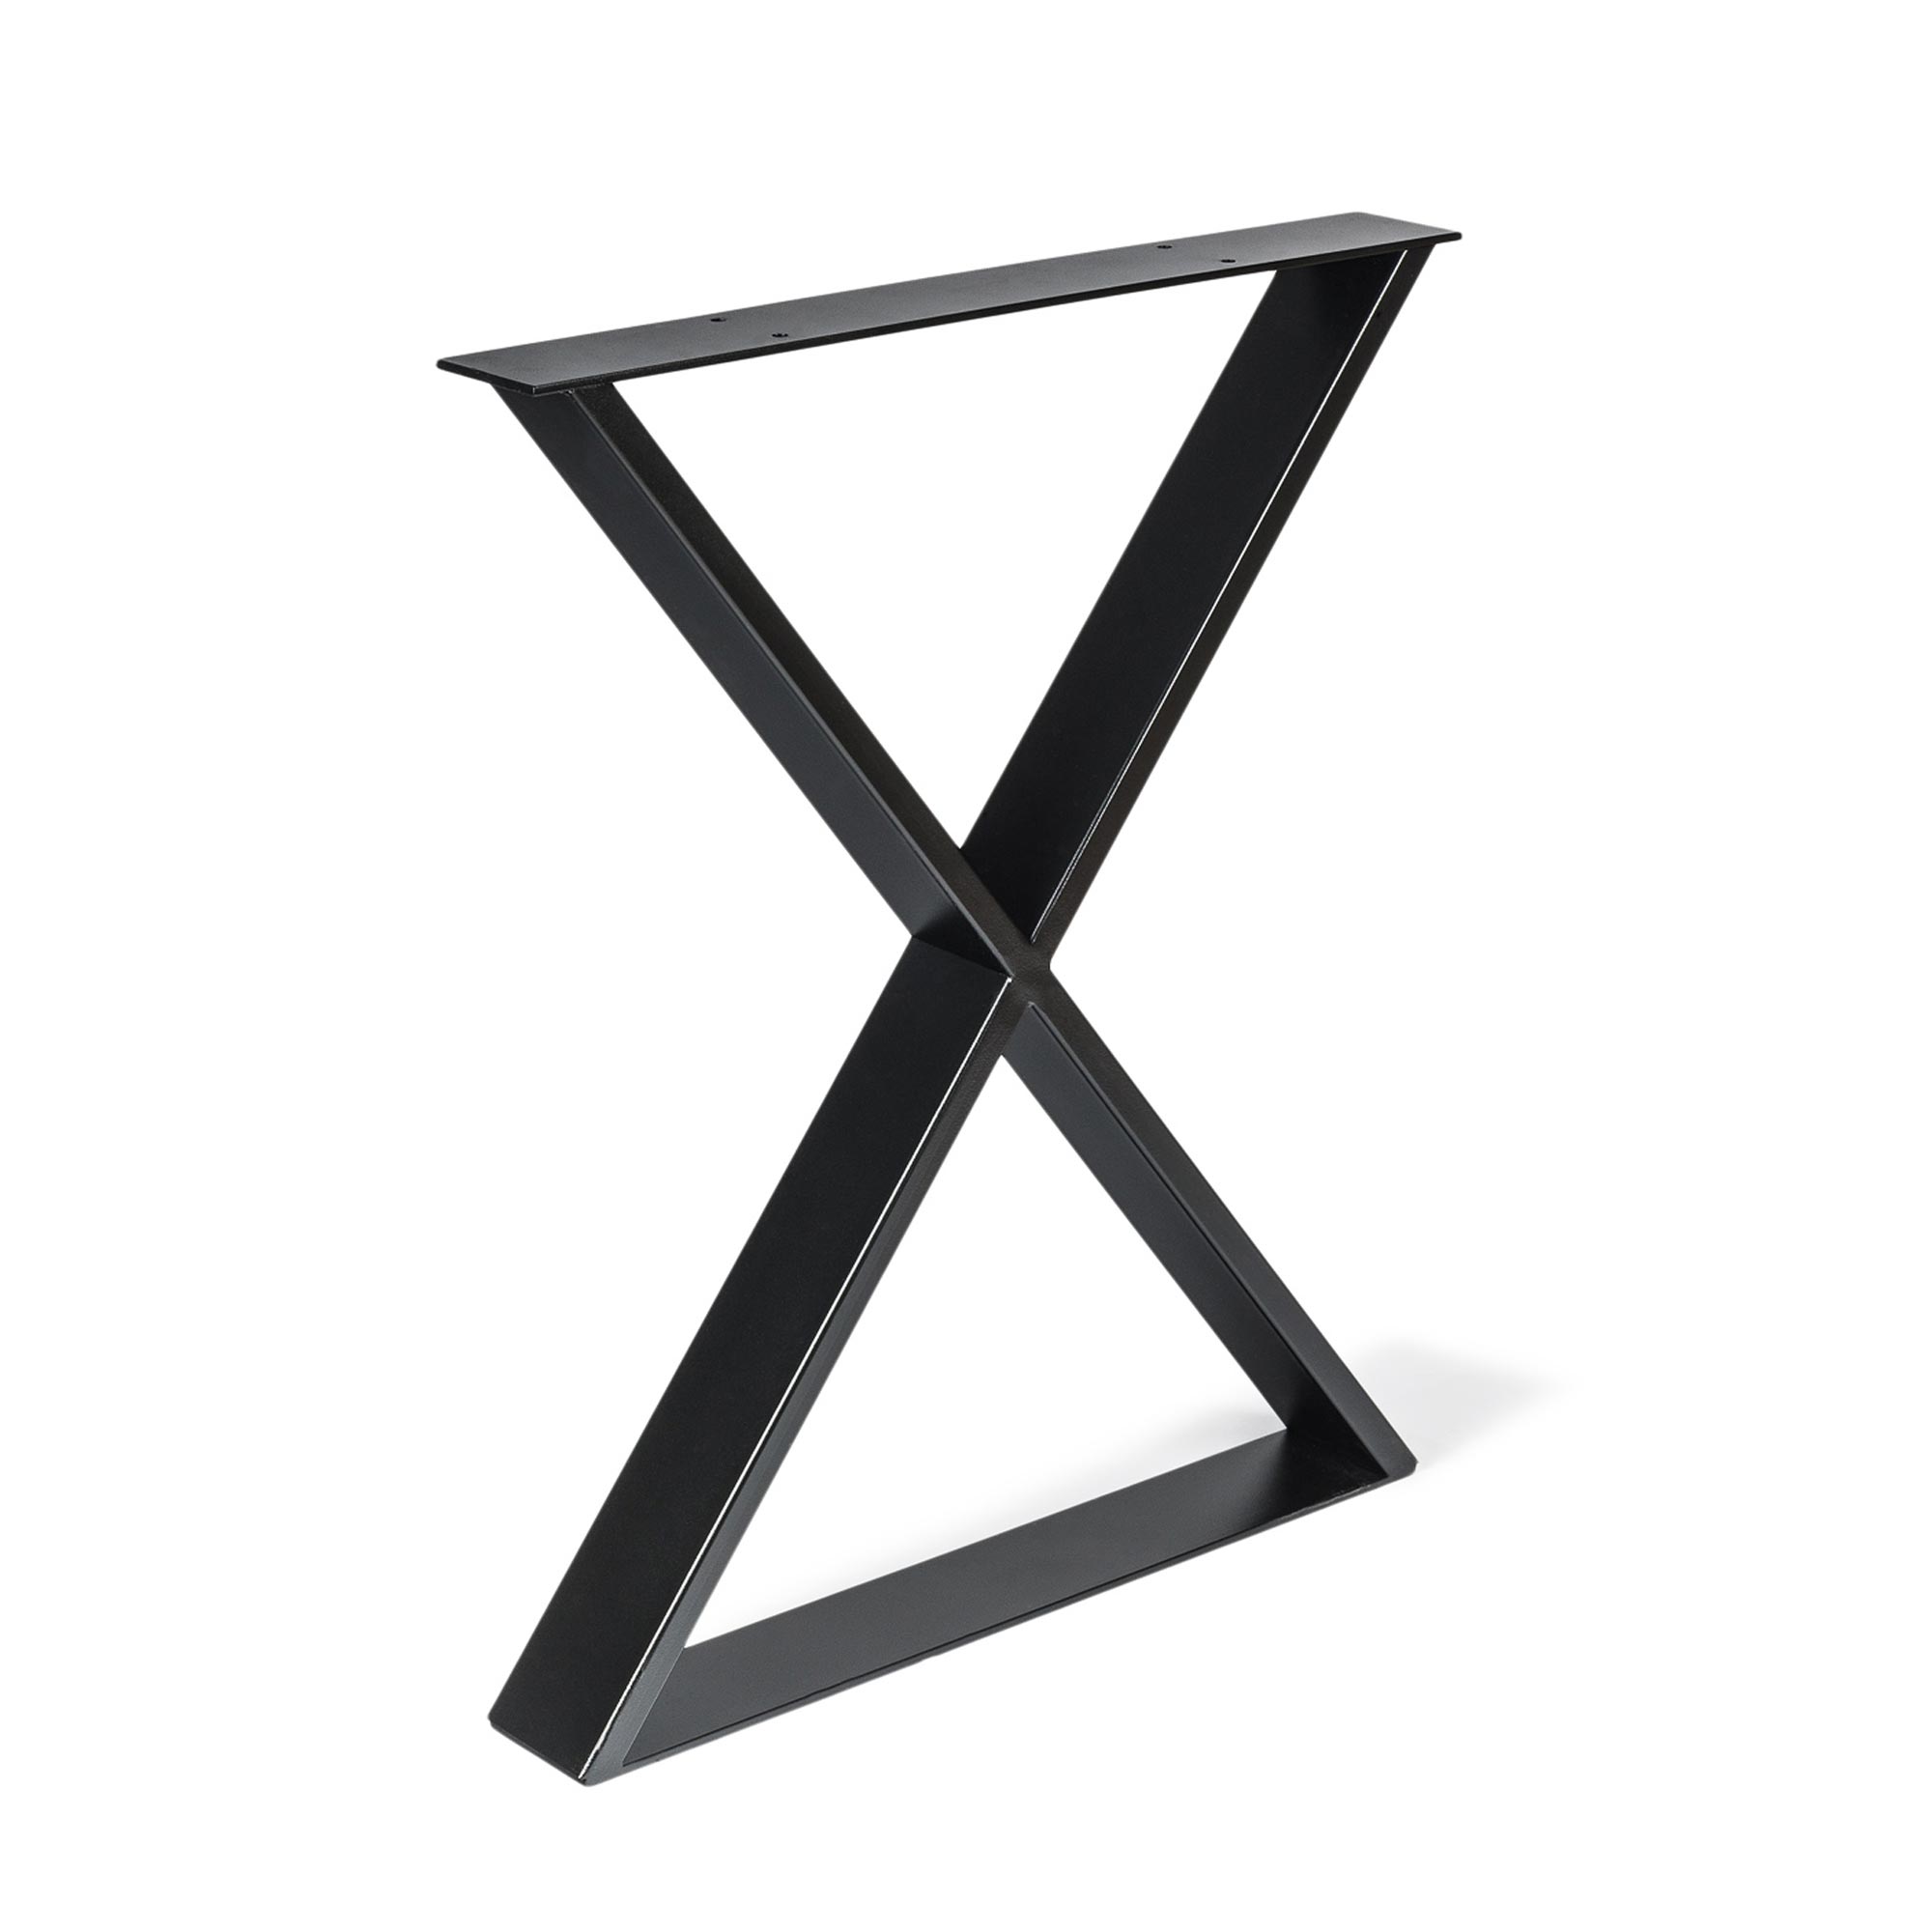 Pied Equis pour meuble en acier noir pores Dimensions 580*80*712mm | Hauteur : 71,2 cm | 1 unité